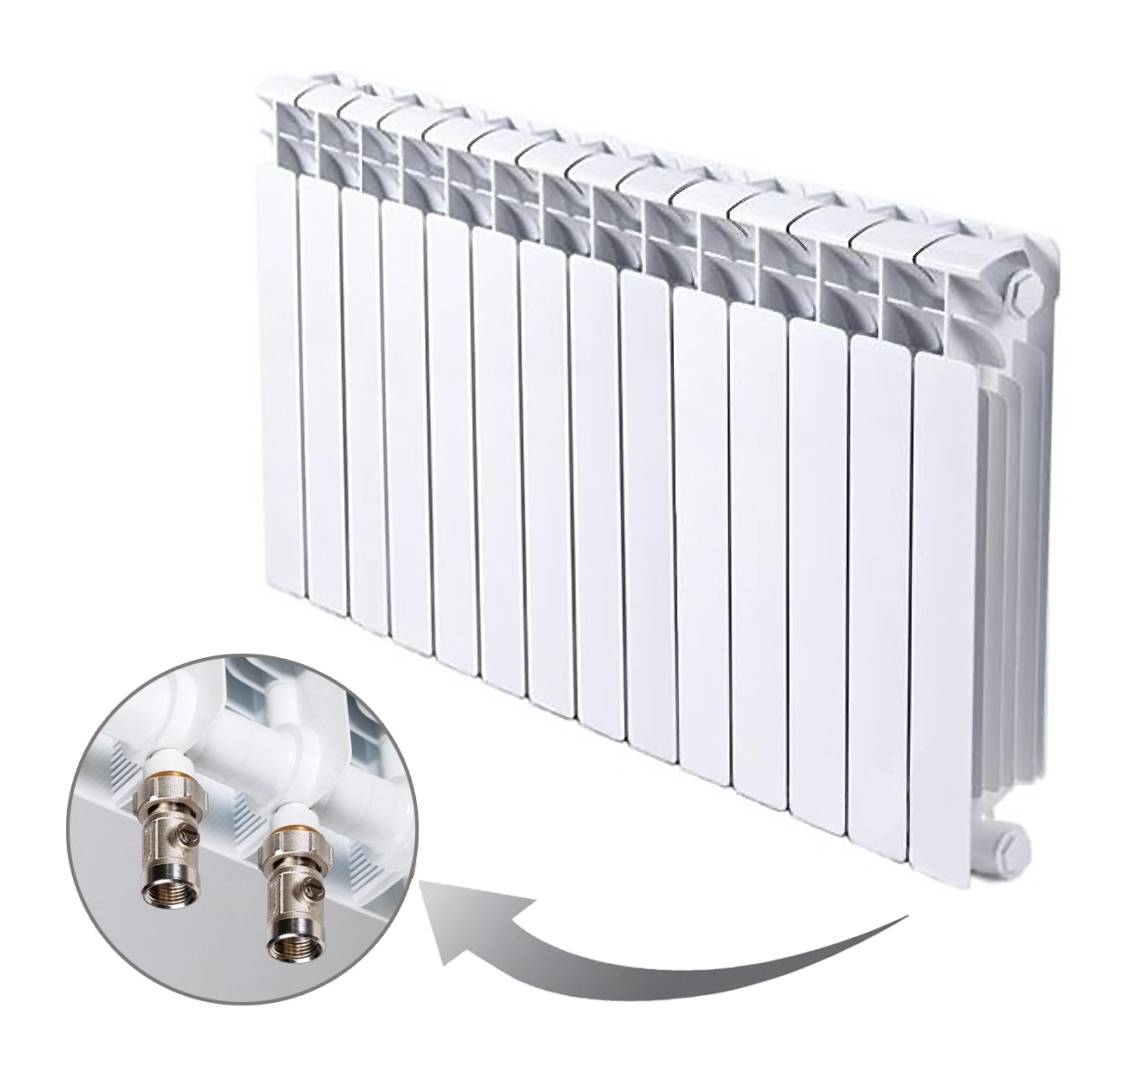 Как выбрать радиаторы отопления для квартиры: выбор батарей в квартиру, какие бывают отопительные радиаторы, какие лучше и правильно поставить, как подобрать современные радиаторы для отопления